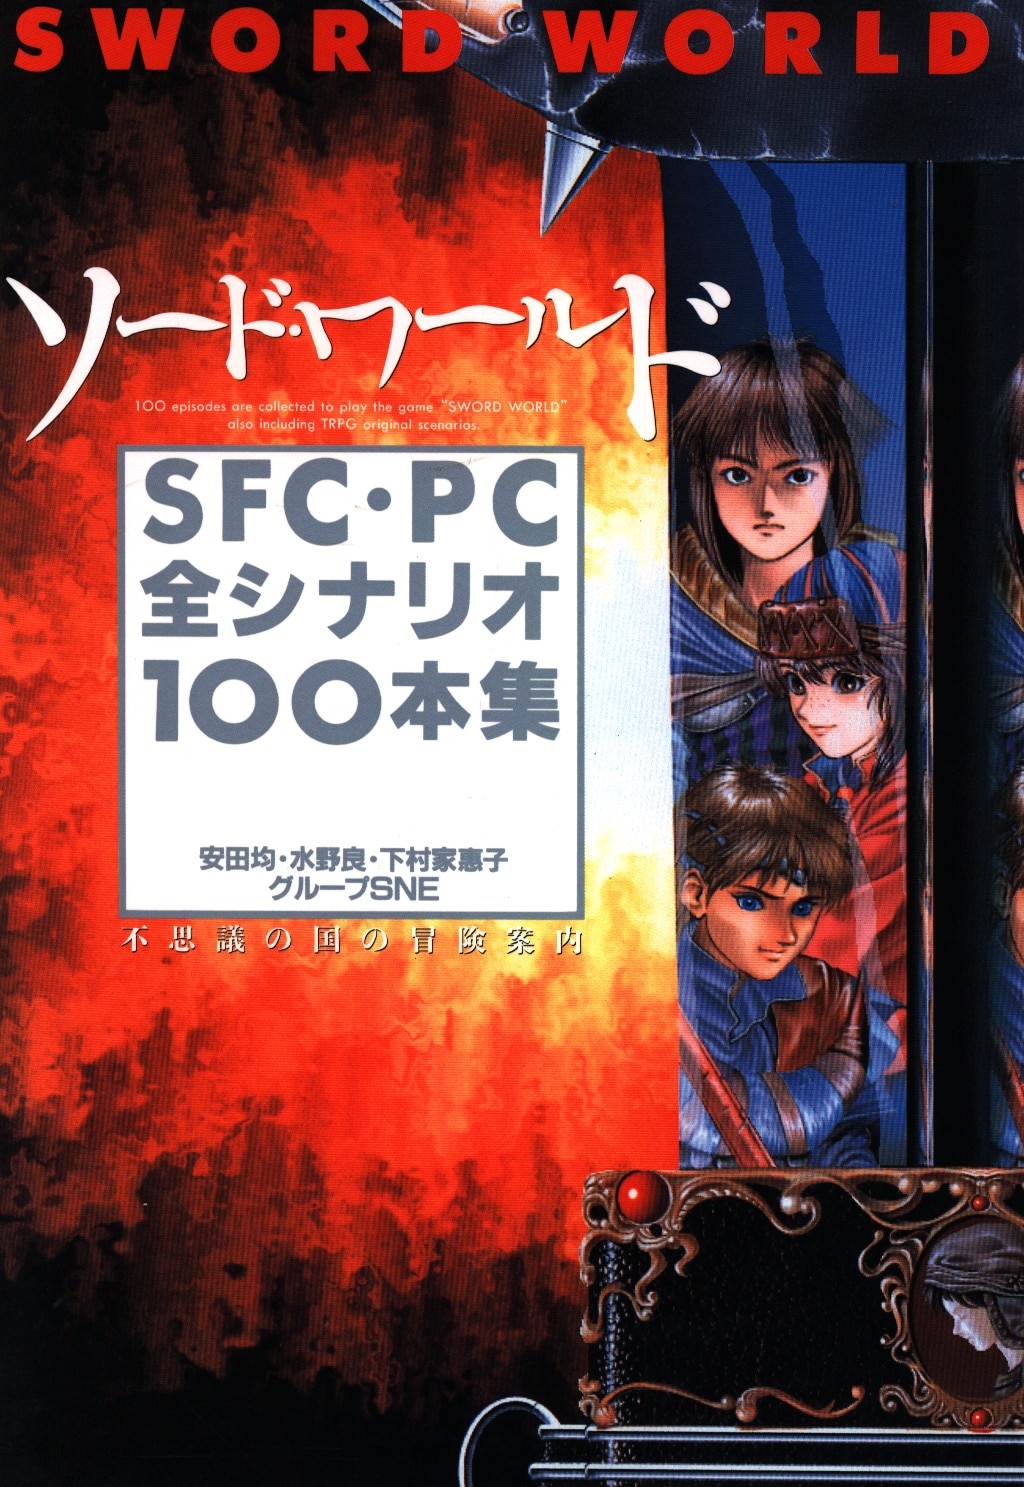 角川書店 コンプコレクション11 ソードワールドSFC・PC全シナリオ100本